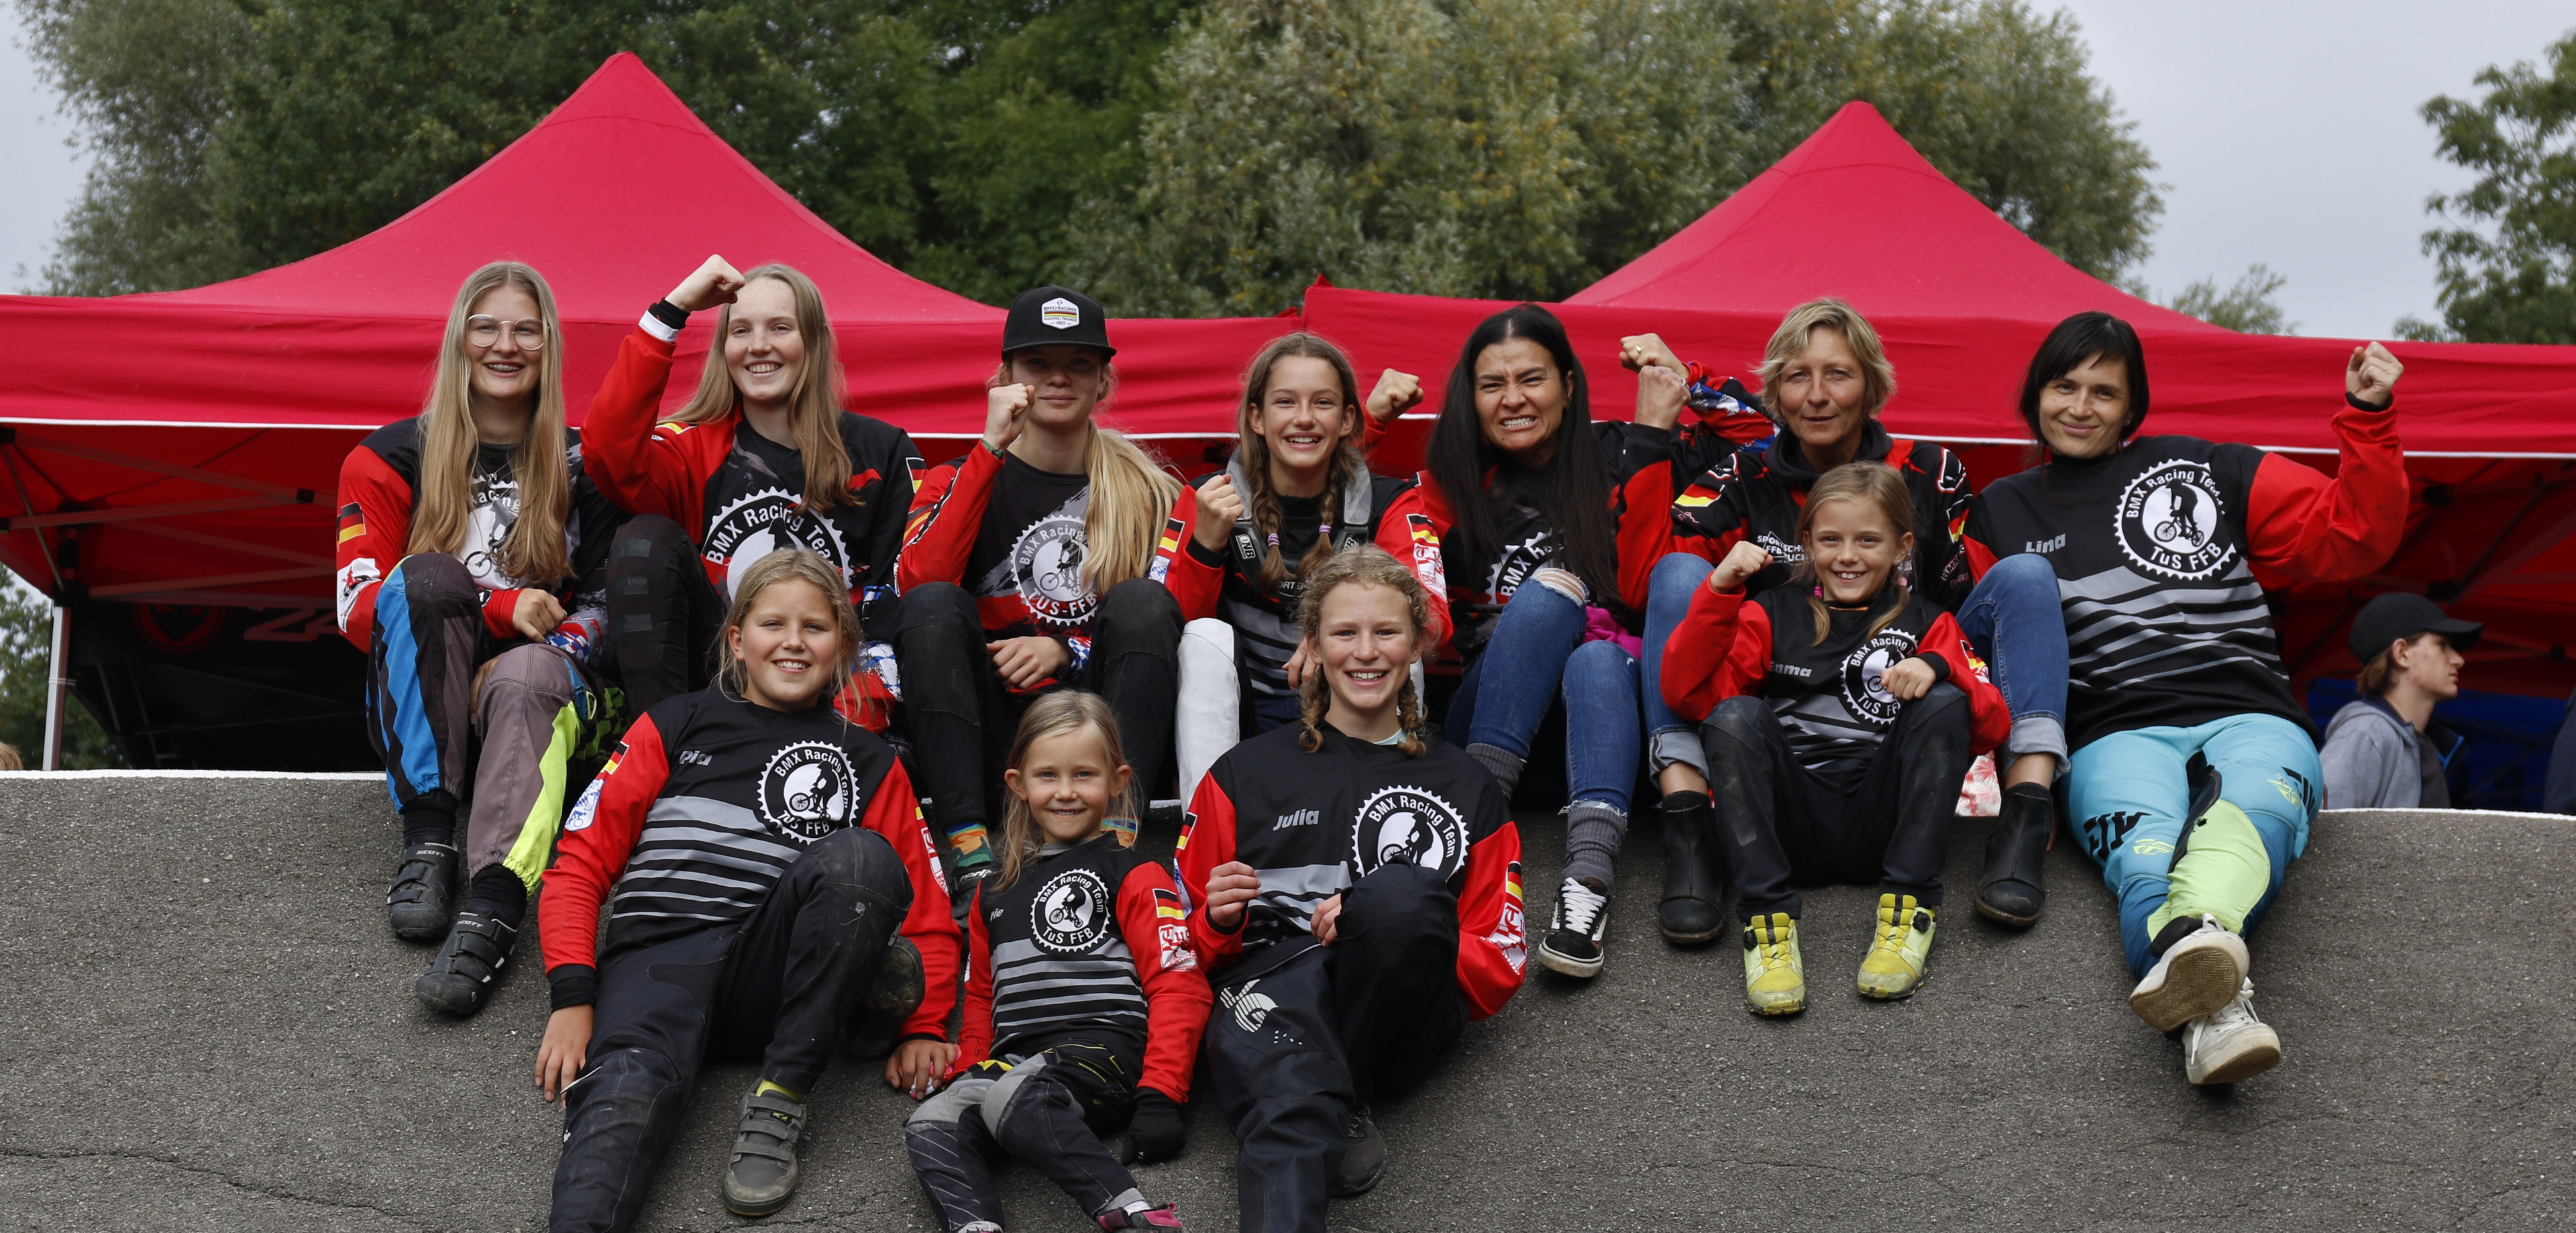 BMX-Racing-Team Girls, fotografiert von @flowografie